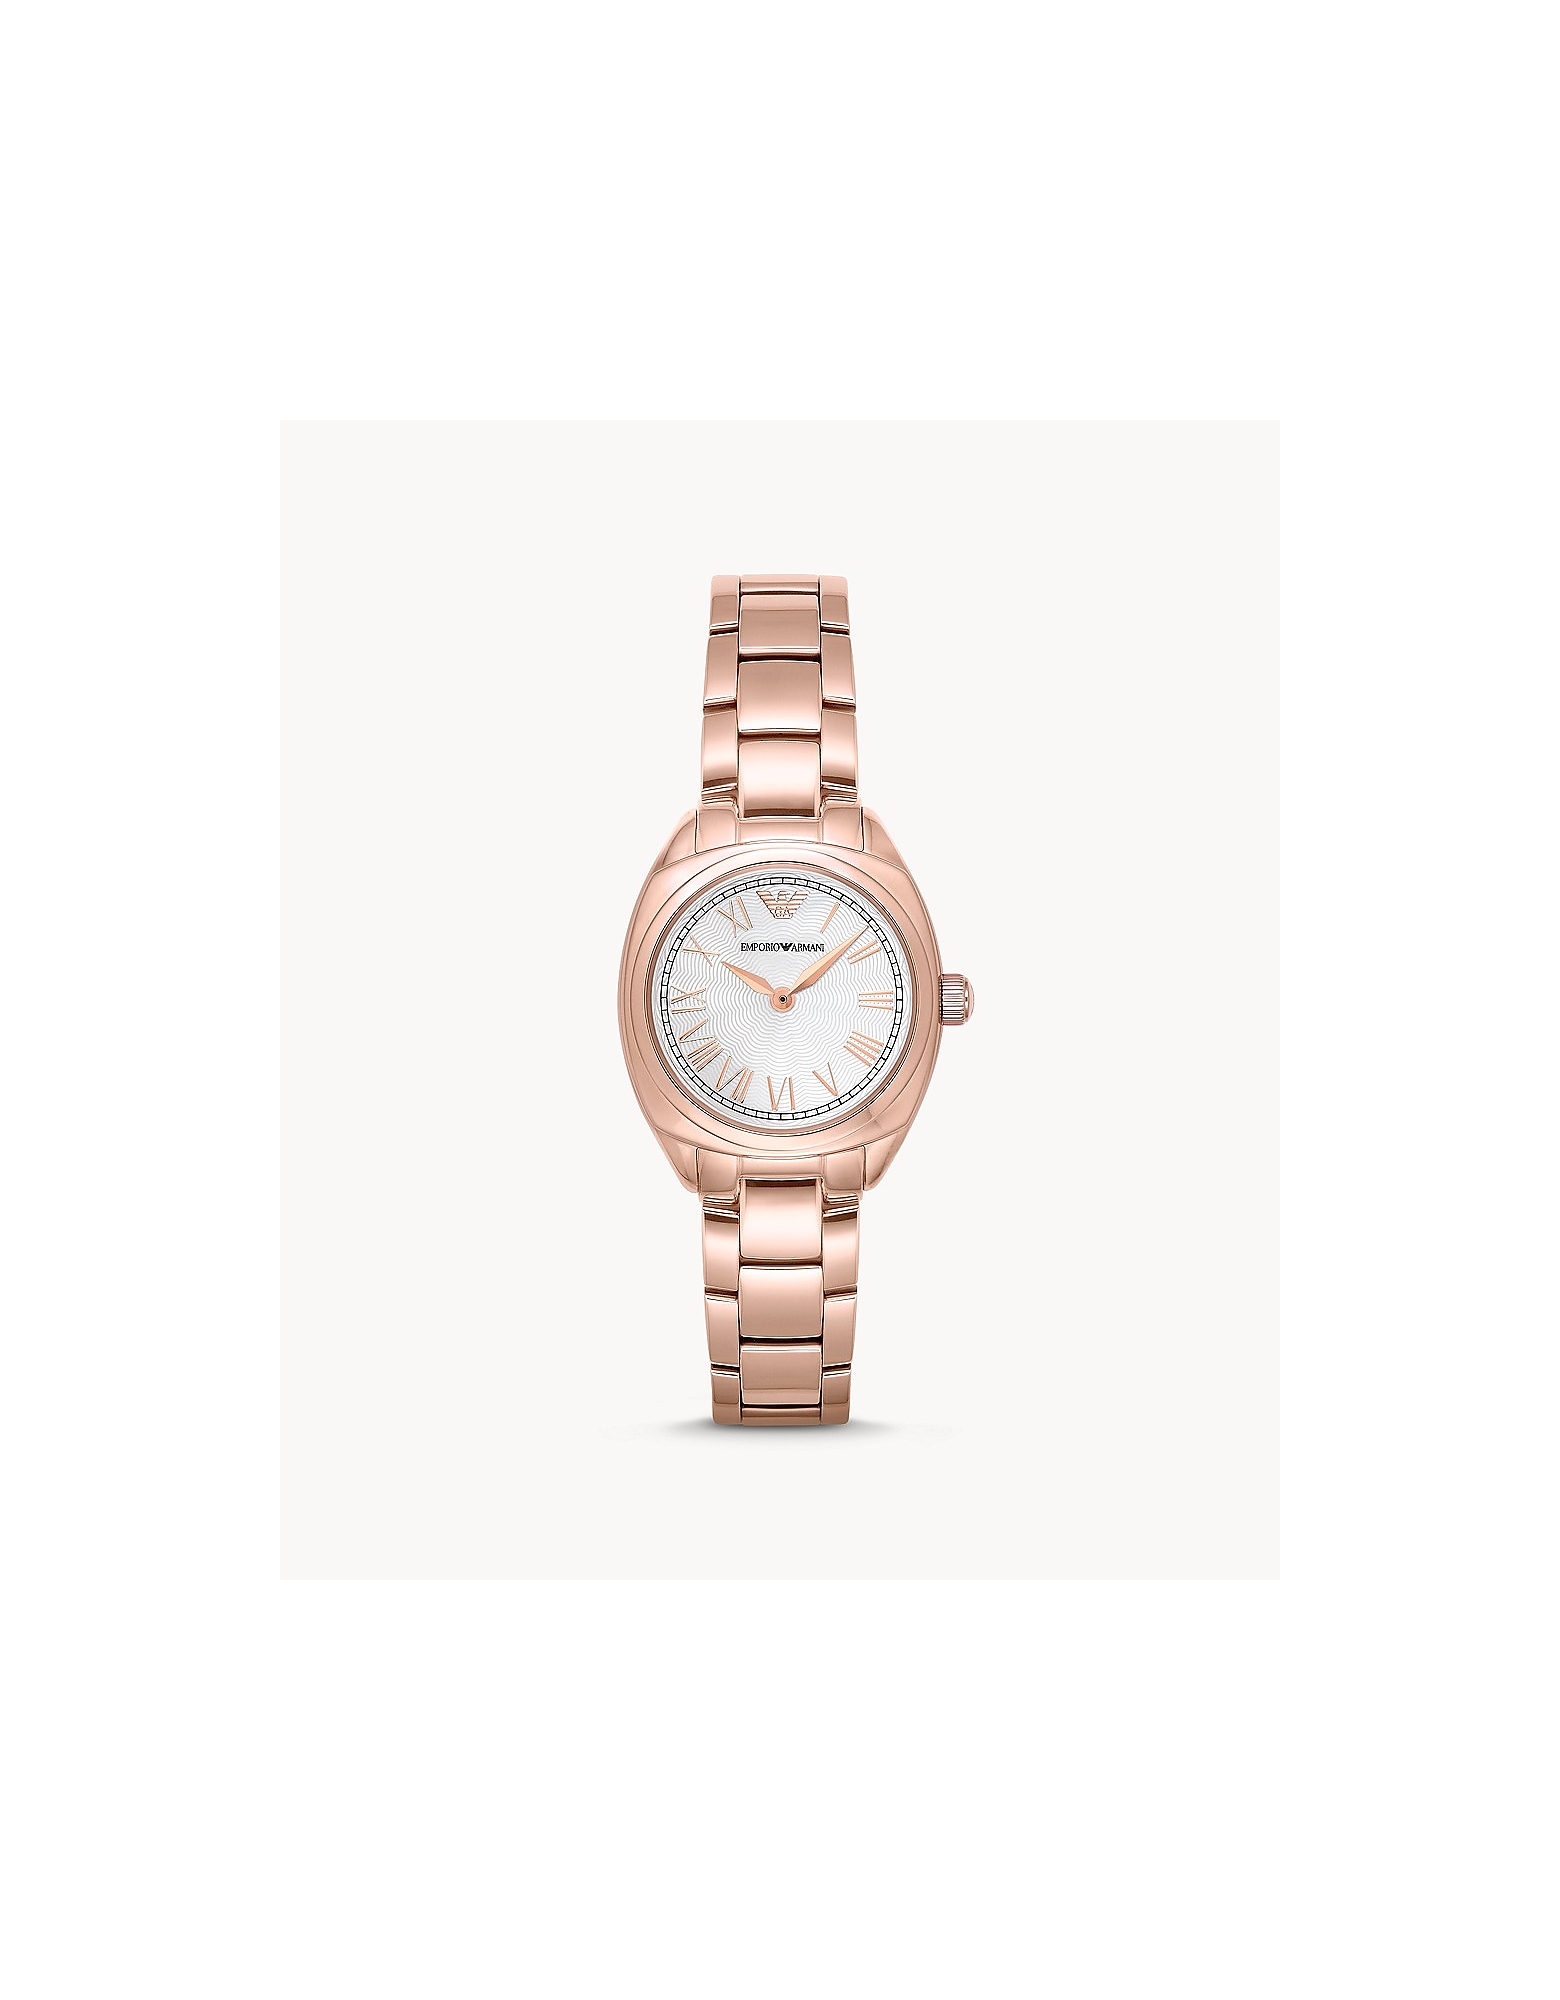 Emporio Armani Designer Women's Watches Women's Quartz Analogue Watch In Gold